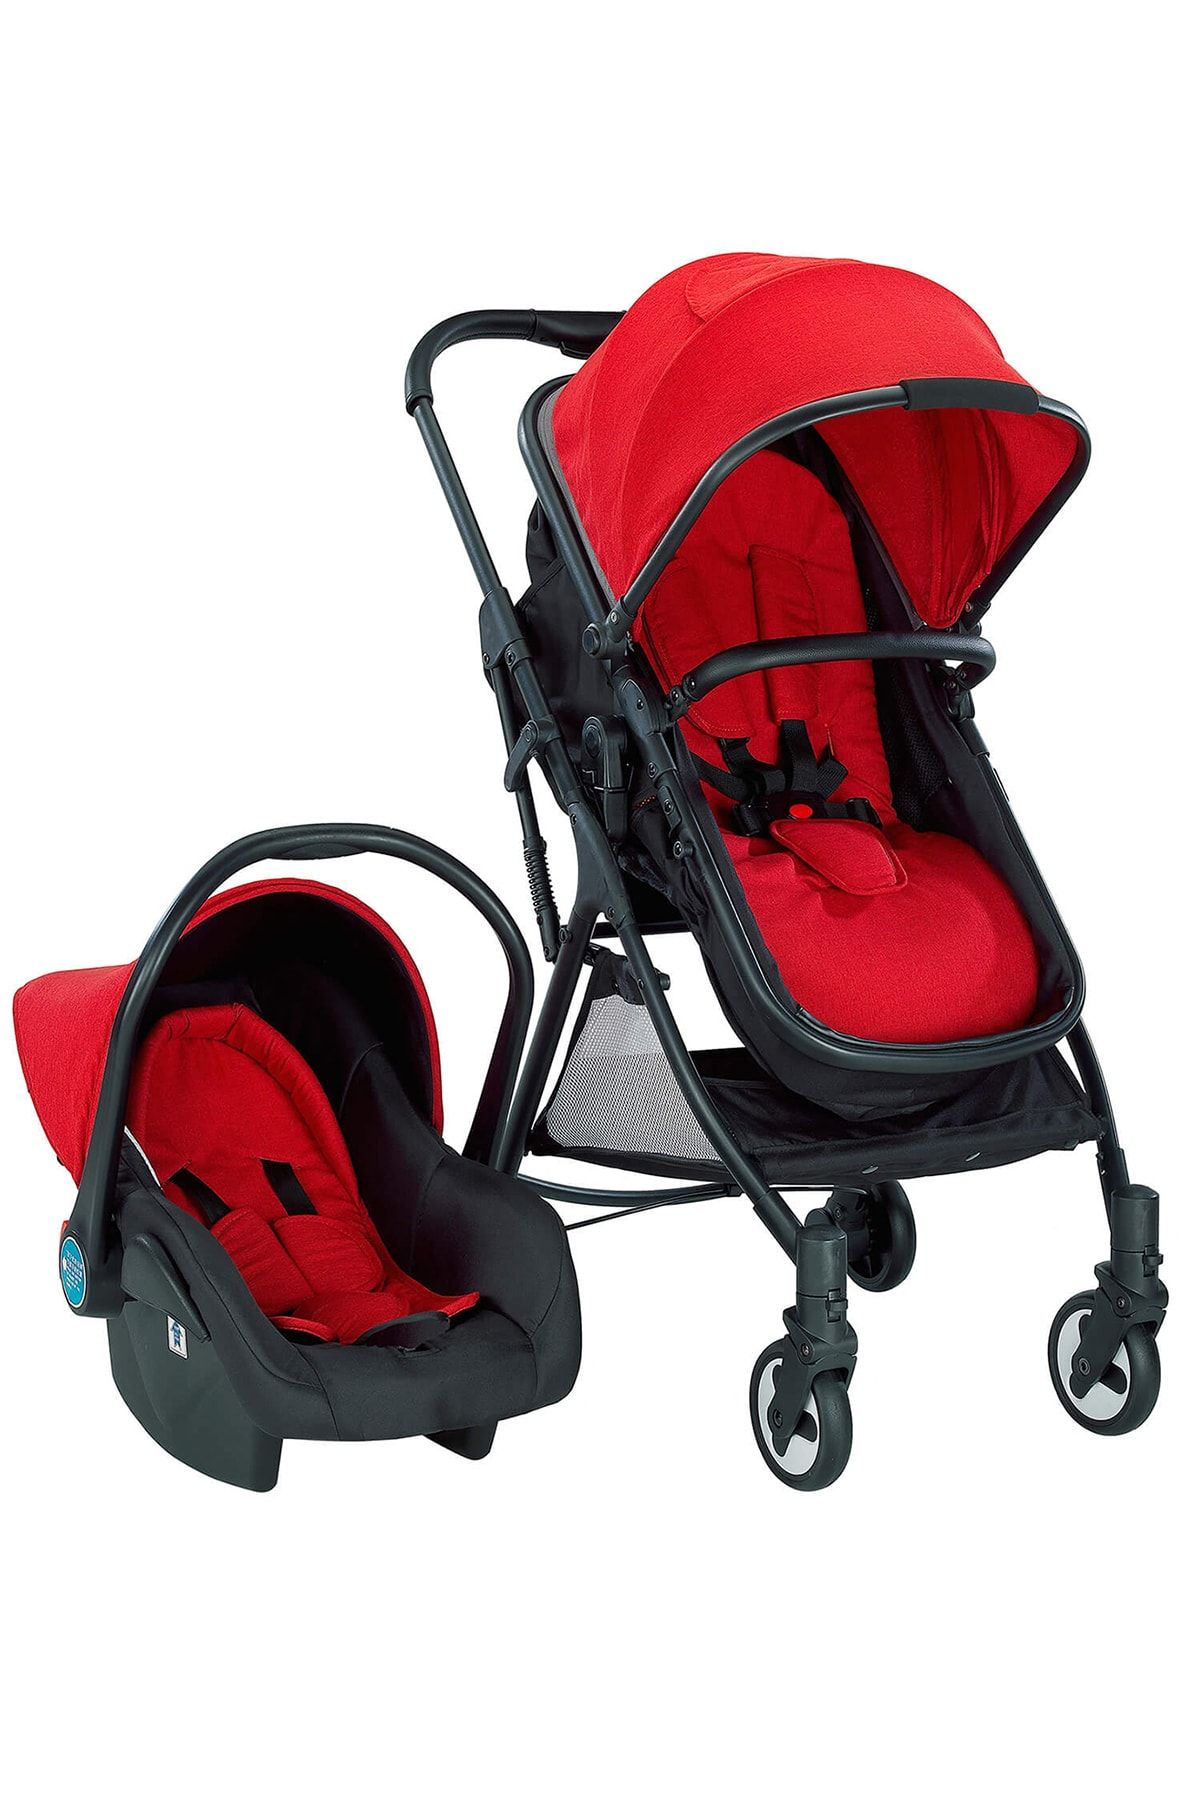 Baby2Go 2038 Eko Travel Sistem Bebek Arabası Kırmızı Renk